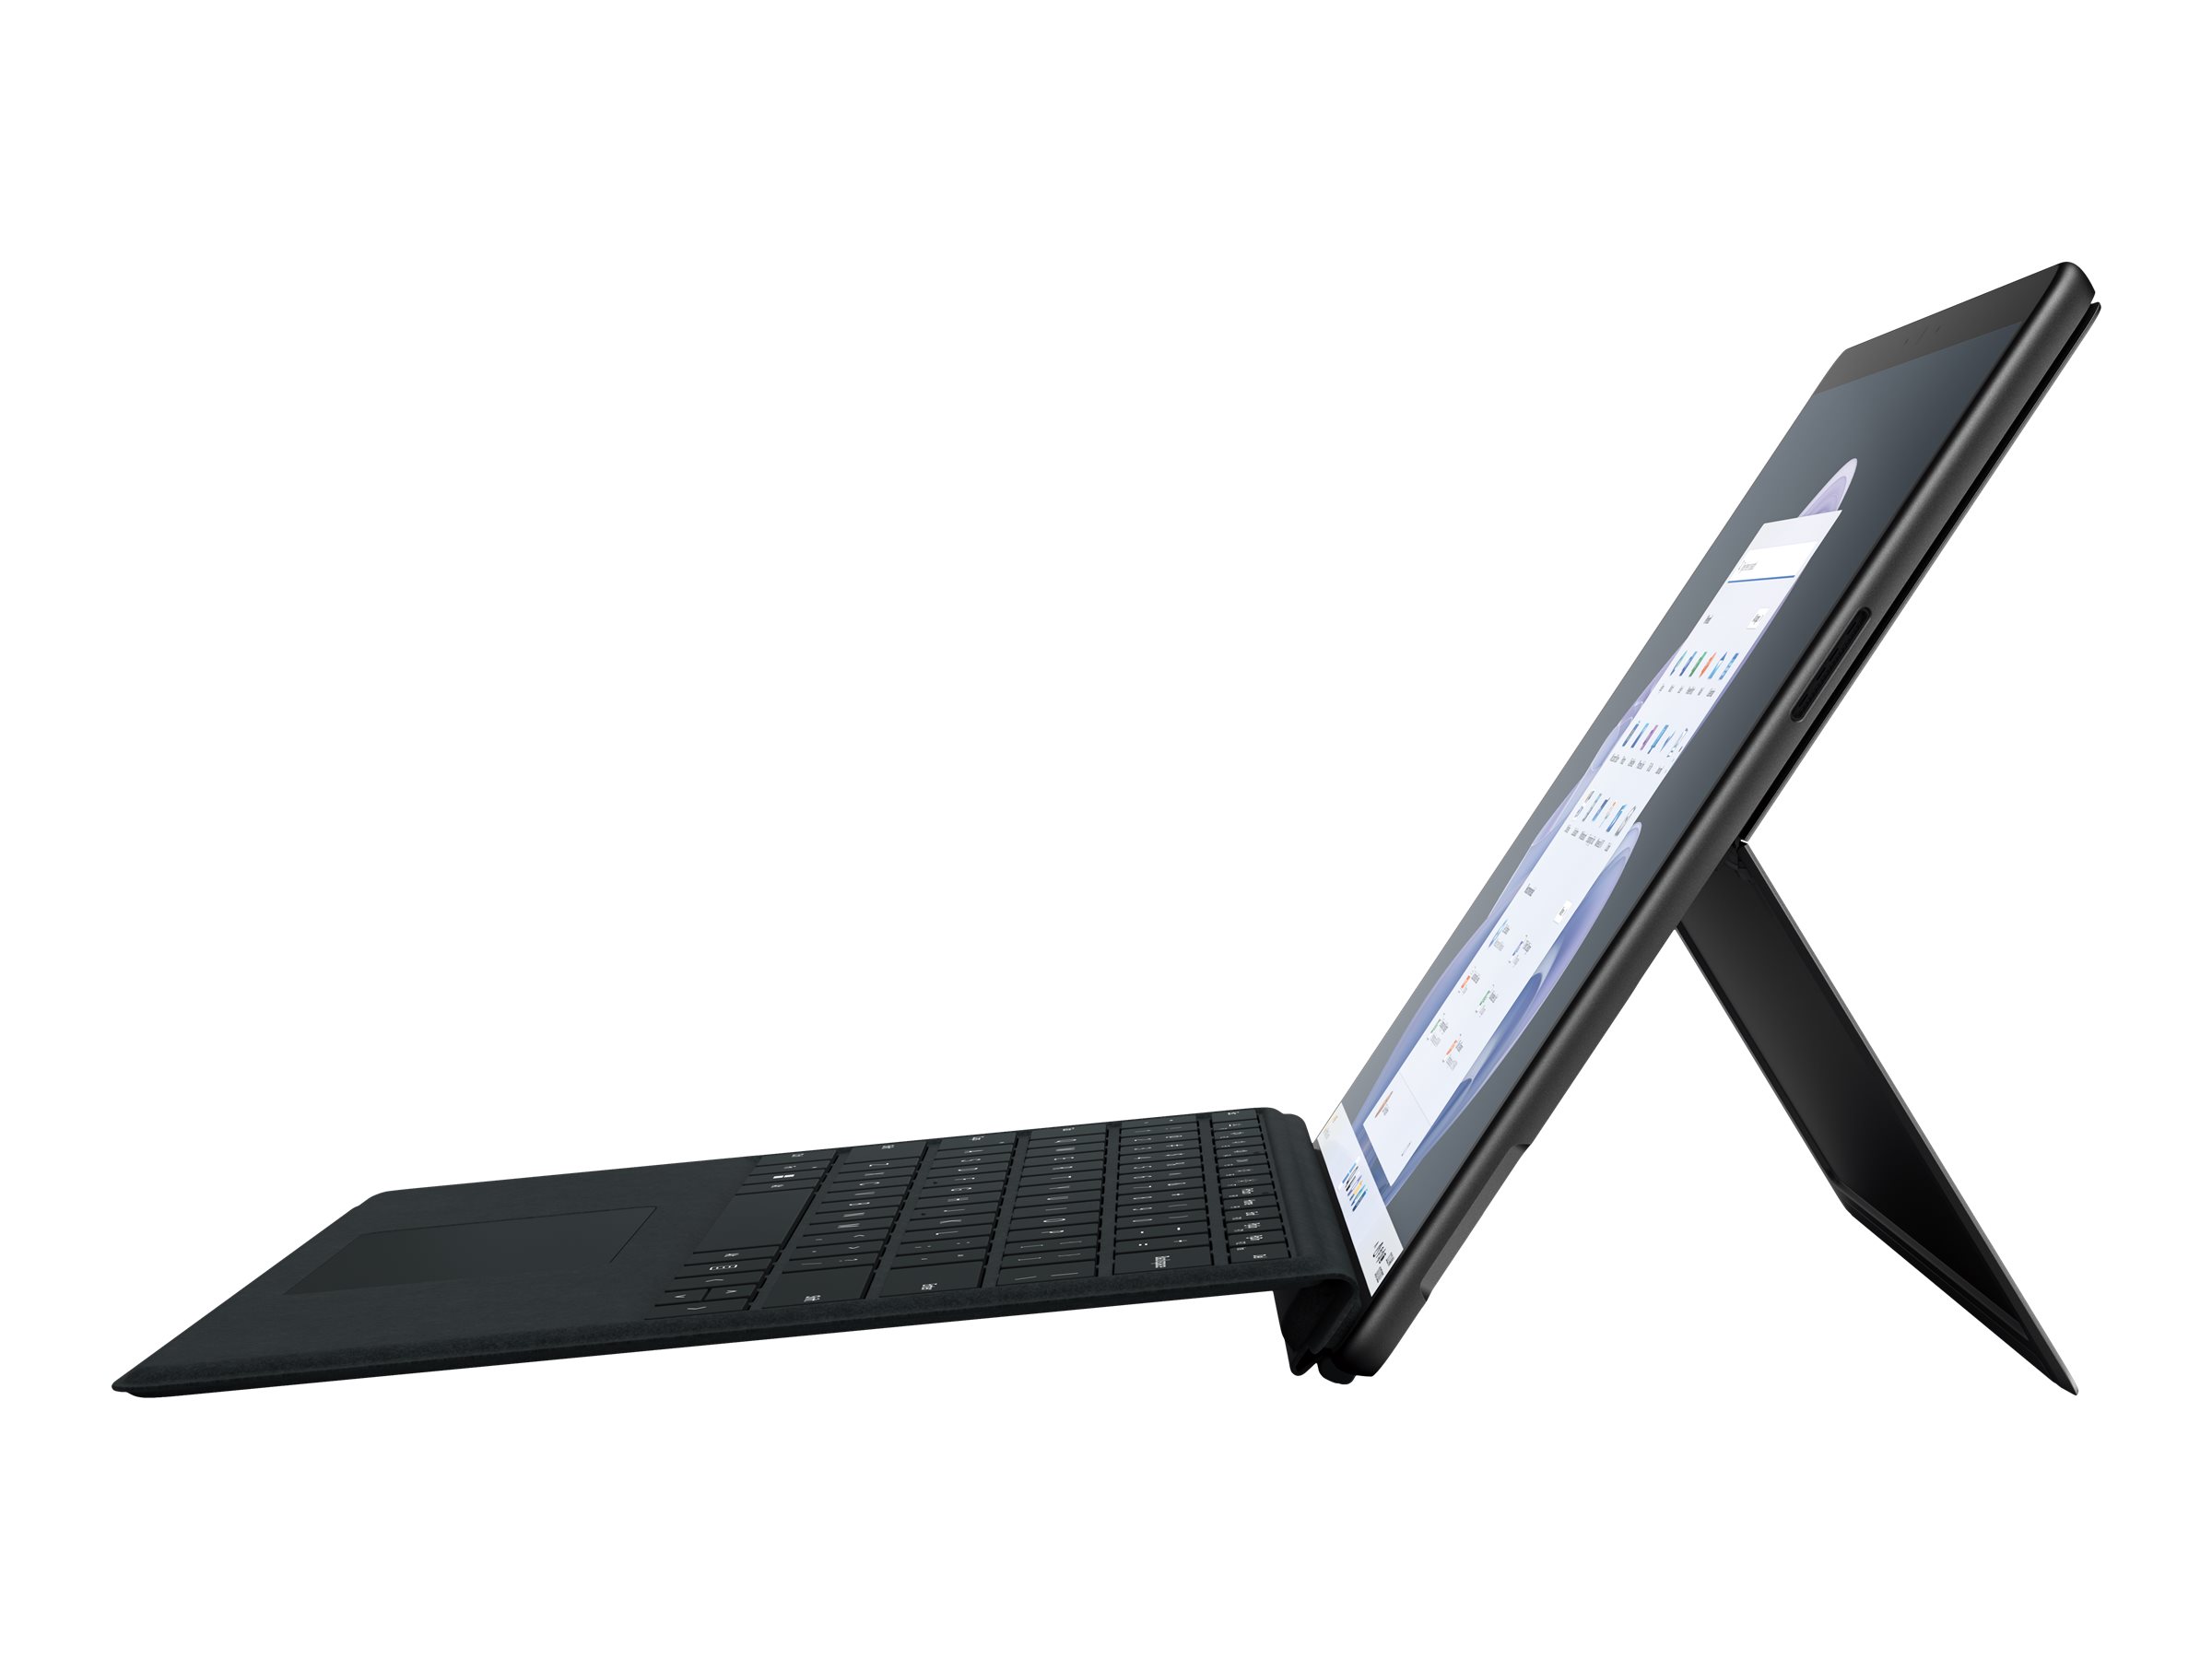 Microsoft Surface Pro 9 for Business - Tablette - Intel Core i7 - 1265U / jusqu'à 4.8 GHz - Evo - Win 11 Pro - Carte graphique Intel Iris Xe - 16 Go RAM - 512 Go SSD - 13" écran tactile 2880 x 1920 @ 120 Hz - Wi-Fi 6E - graphite - QIY-00020 - Ordinateurs portables